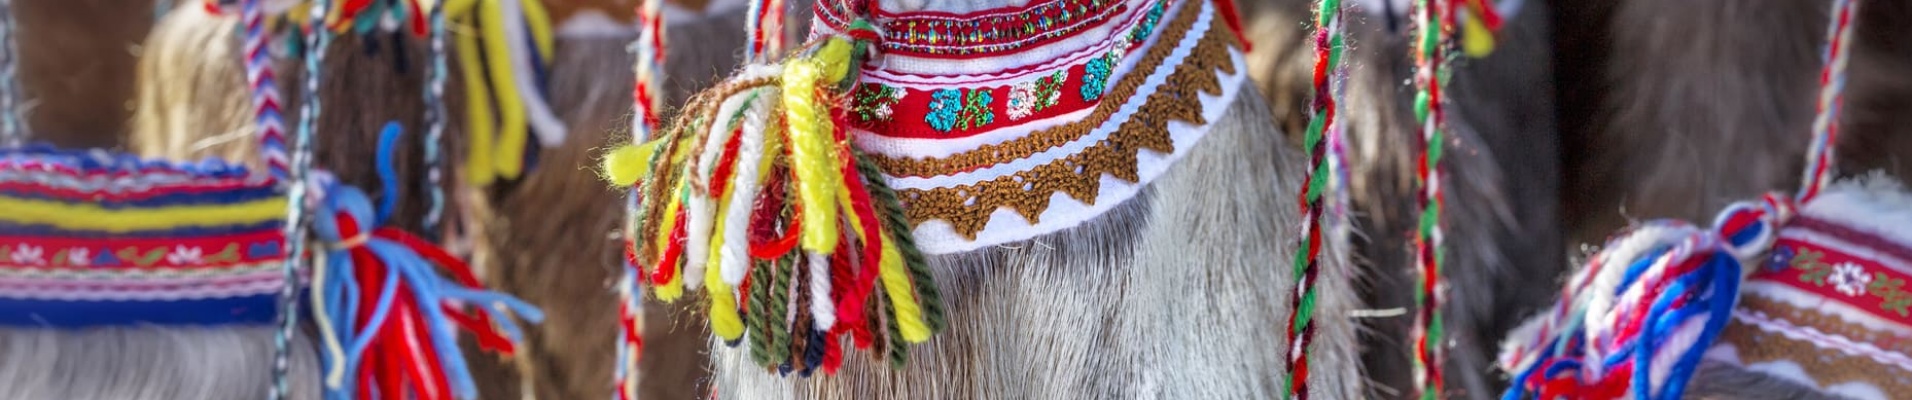 Sac en fourrure ethnique samis